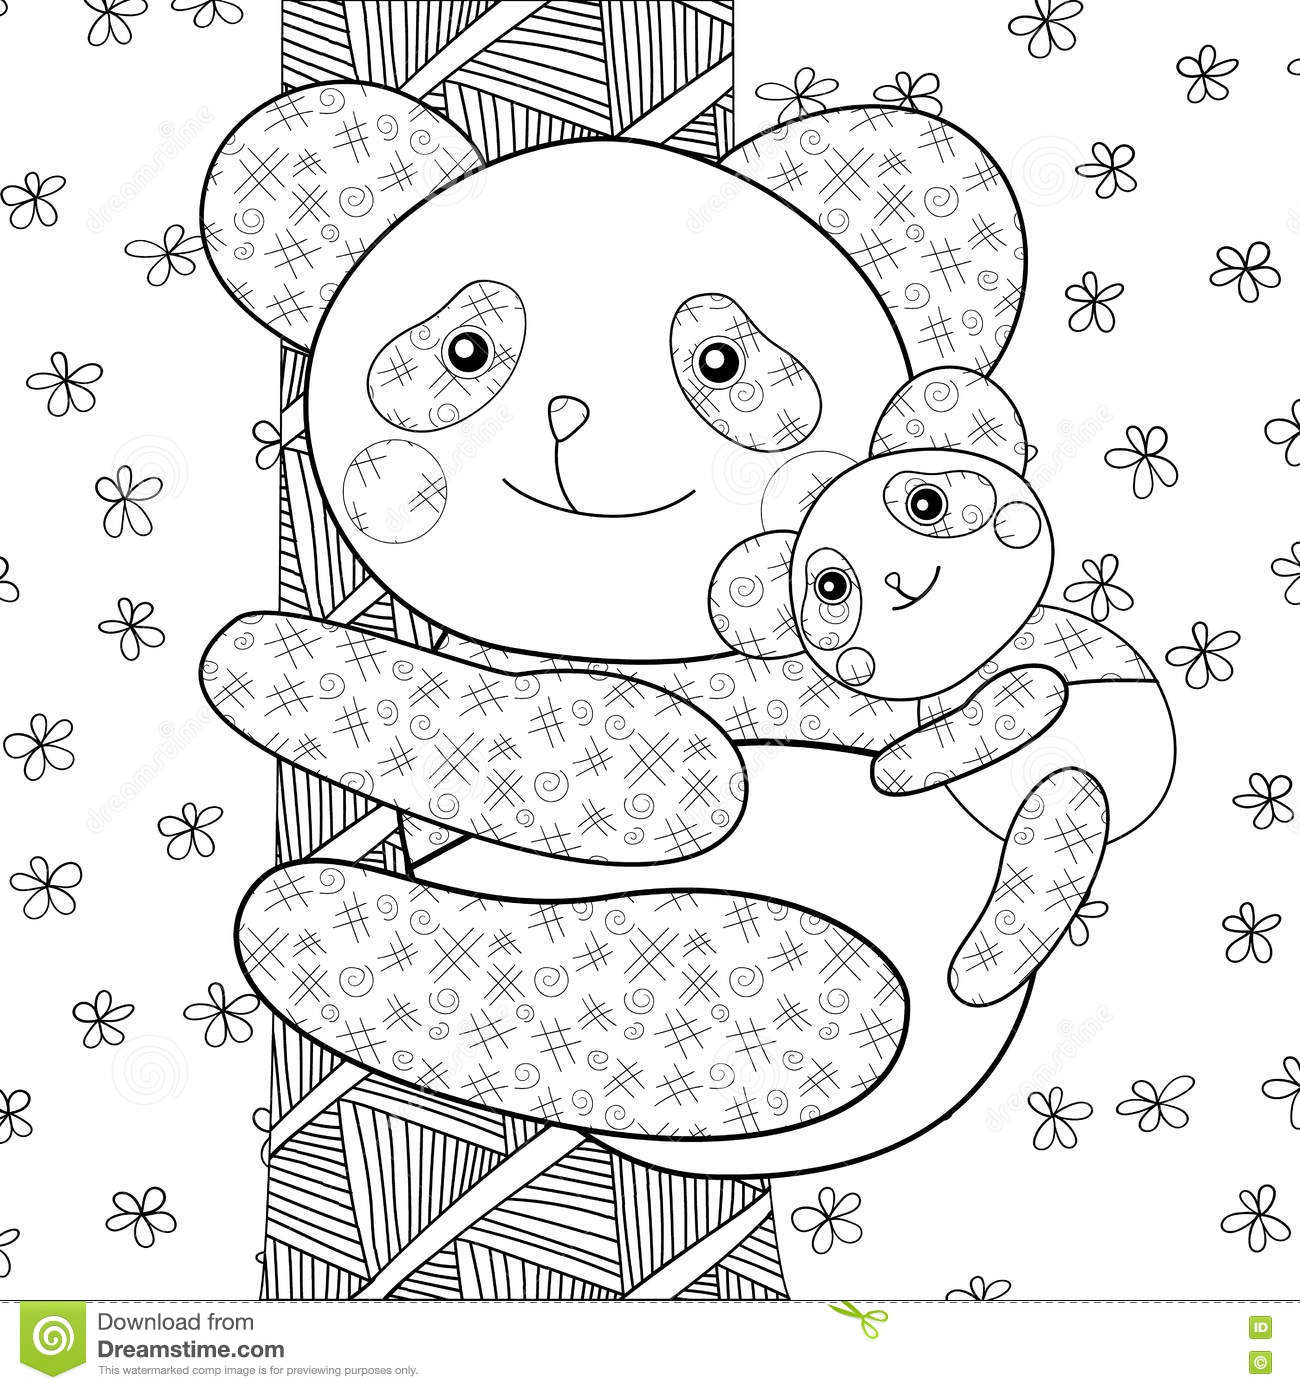 Page De Livre De Coloriage D&amp;#039;Enfant De Panda Illustration serapportantà Coloriage Panda 